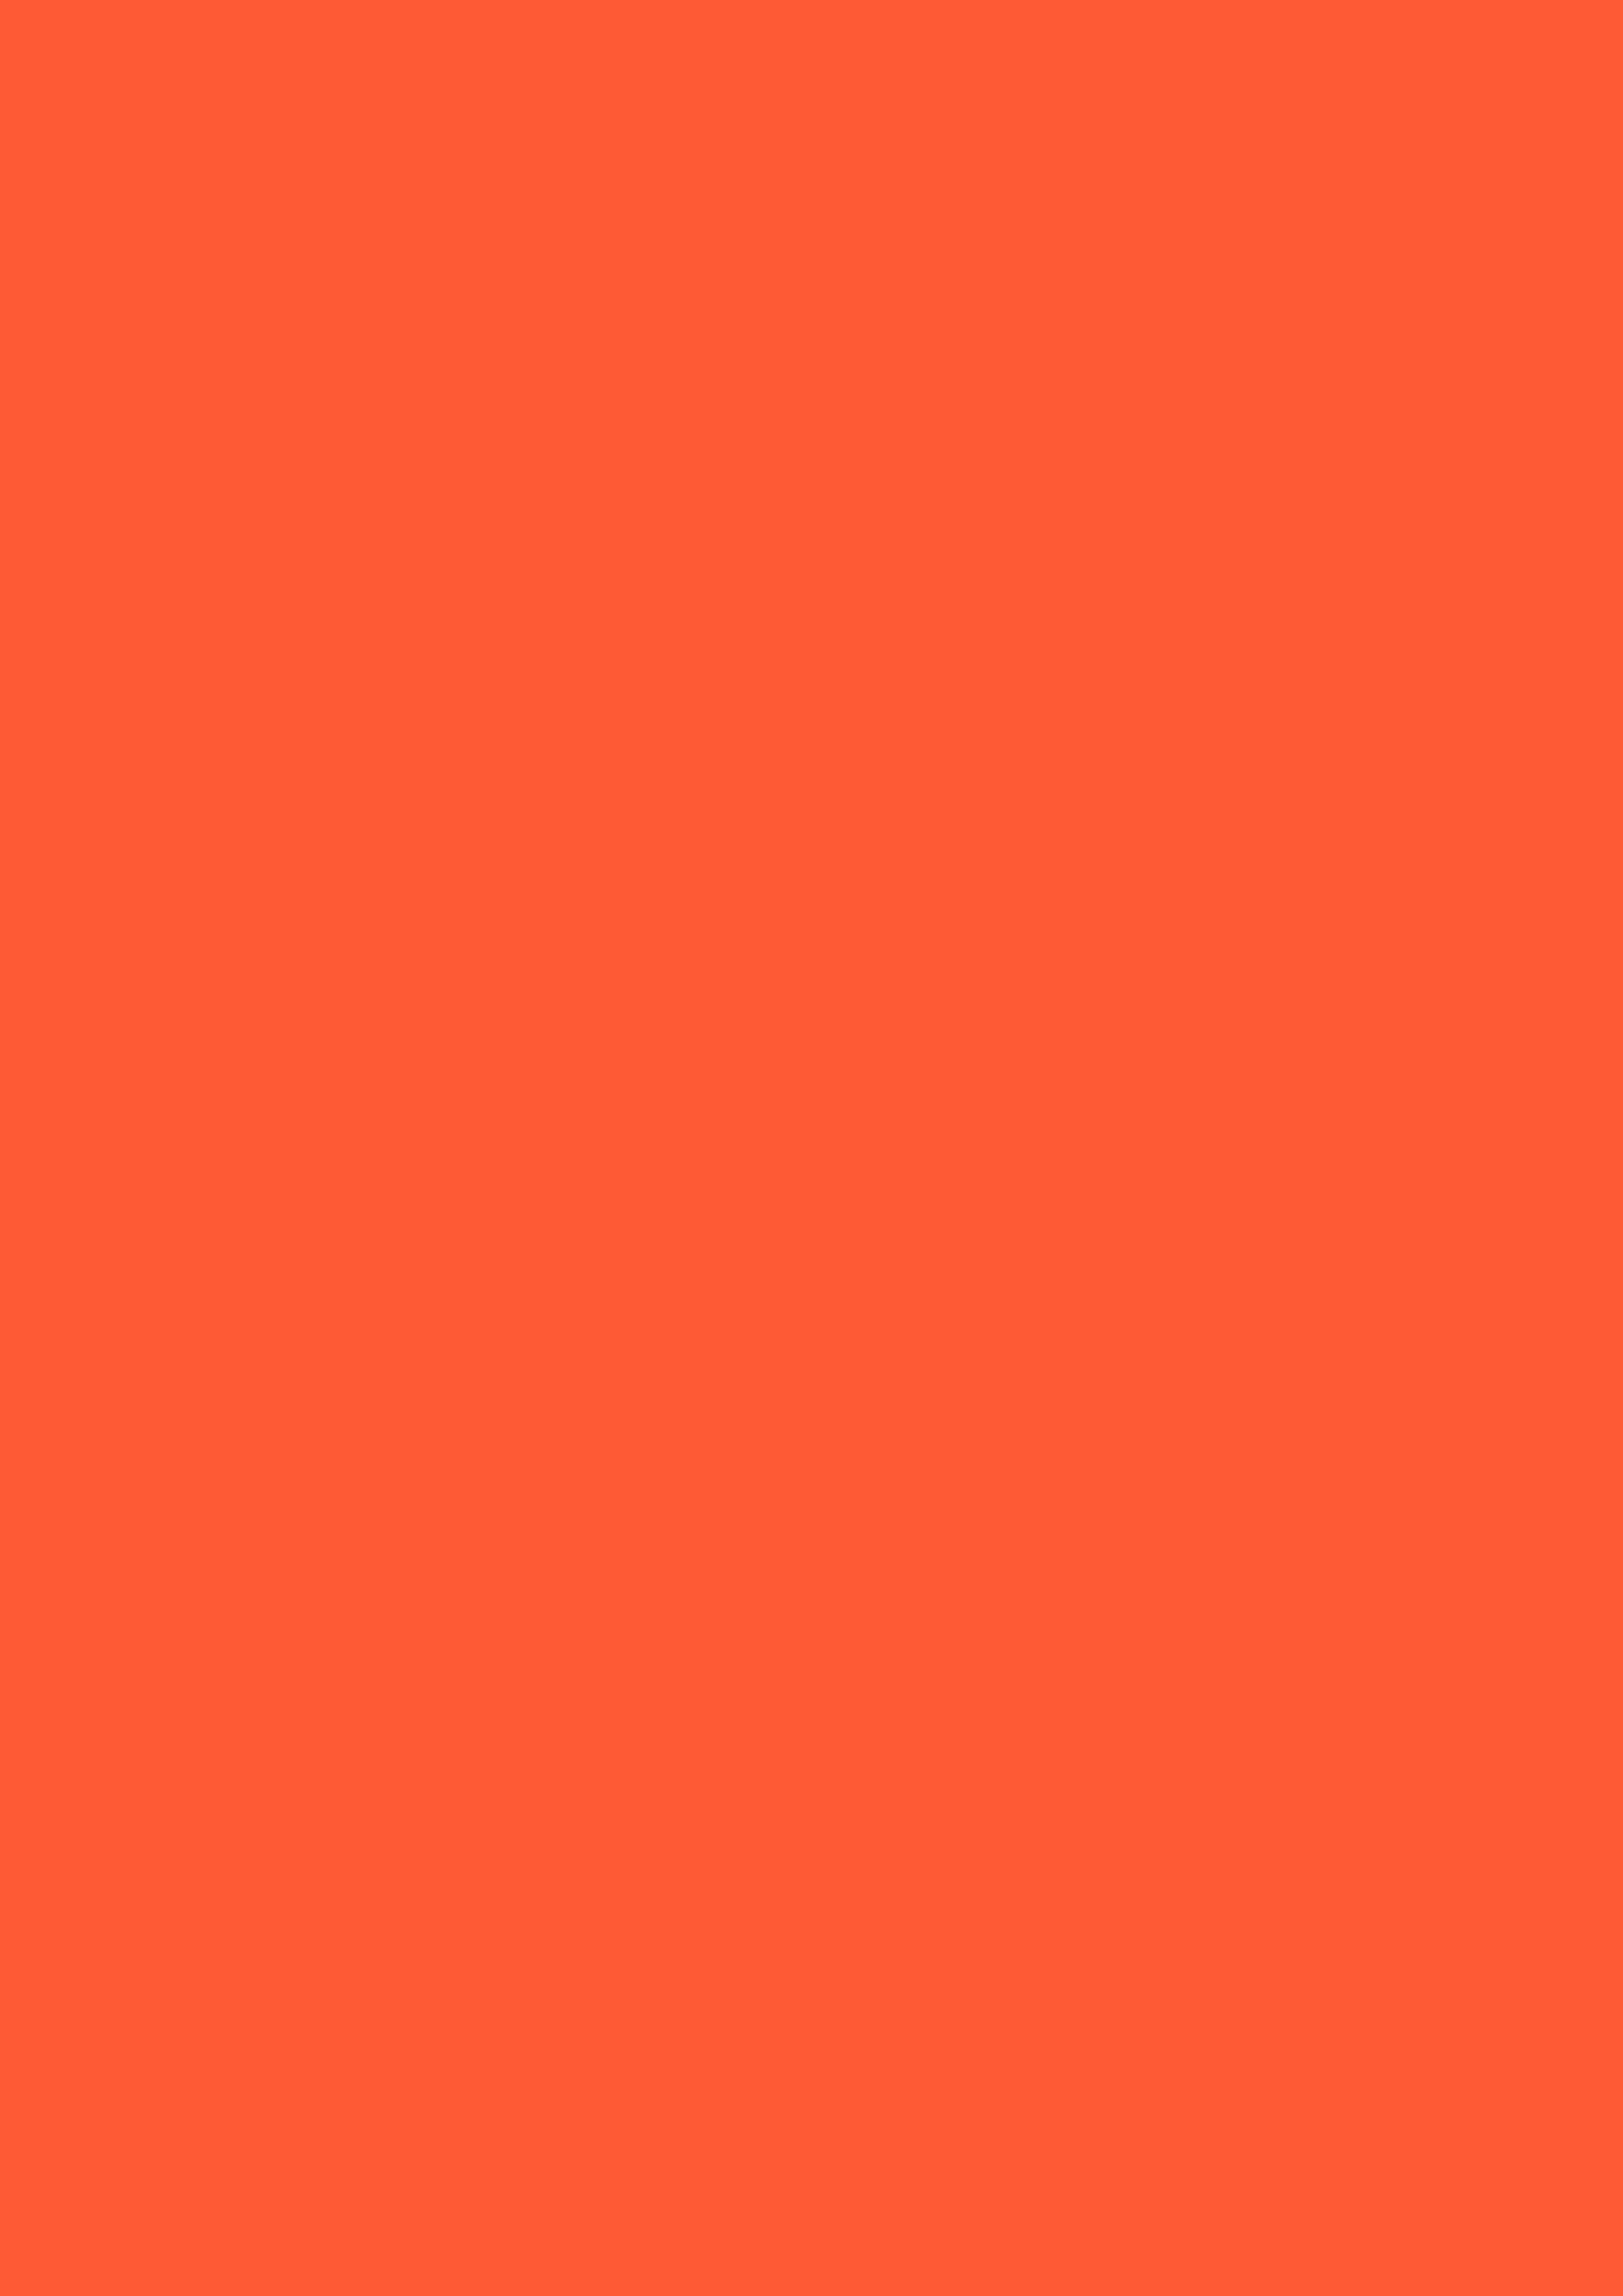 2480x3508 Portland Orange Solid Color Background